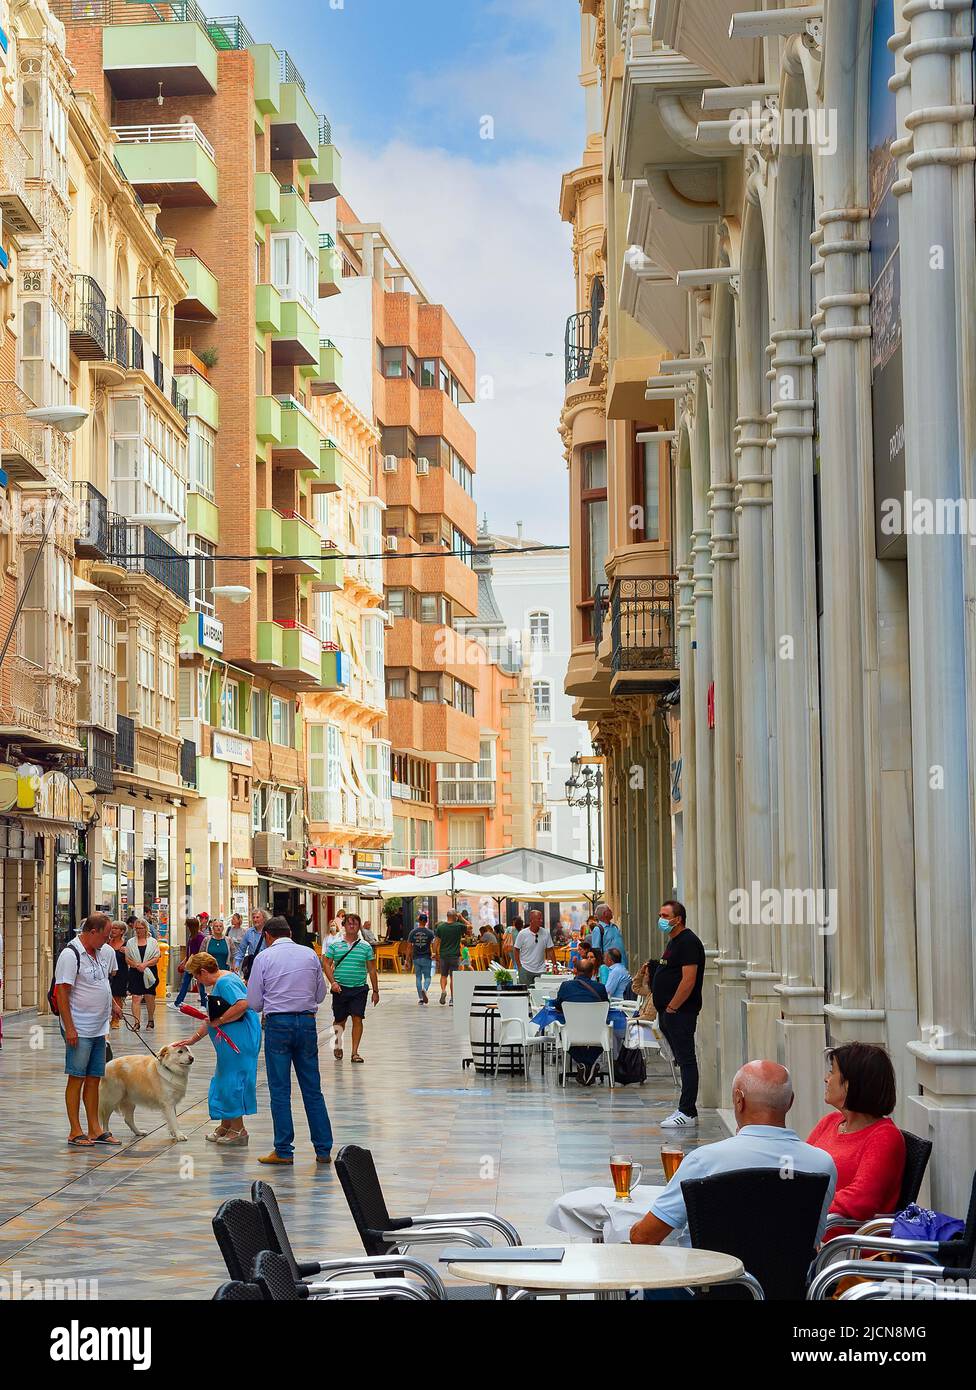 CARTAGENA, ESPAÑA - 1 DE NOVIEMBRE de 2021: Concurrida calle de la ciudad comercial con cafés, gente que camina, arquitectura moderna Foto de stock